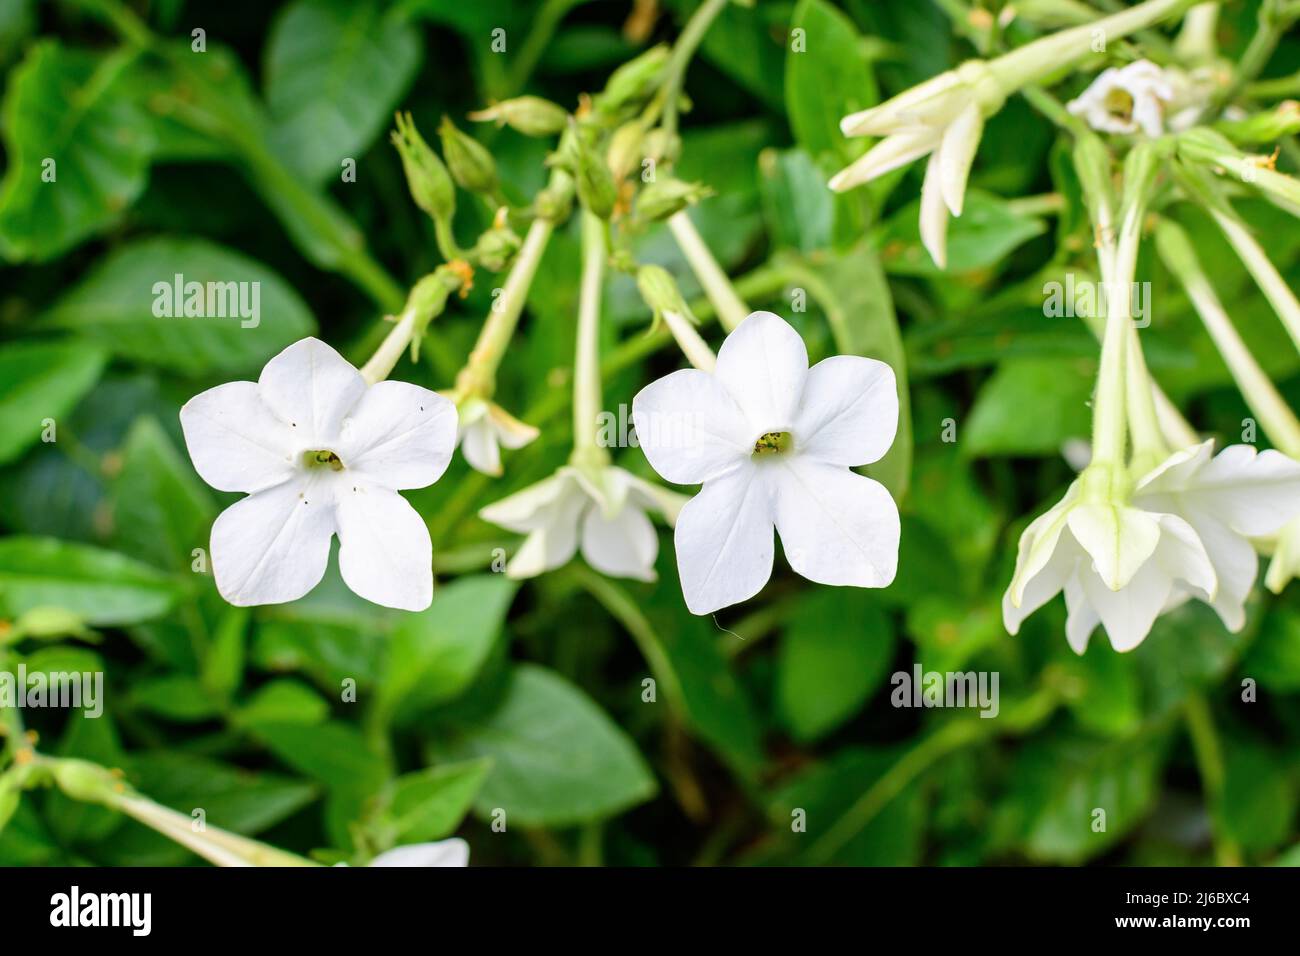 Beaucoup de fleurs blanches délicates de Nicotiana alata plante, communément connu sous le nom de tabac jasmin, tabac doux, tabac ailé, tanbaku ou tabac perse, dans Banque D'Images